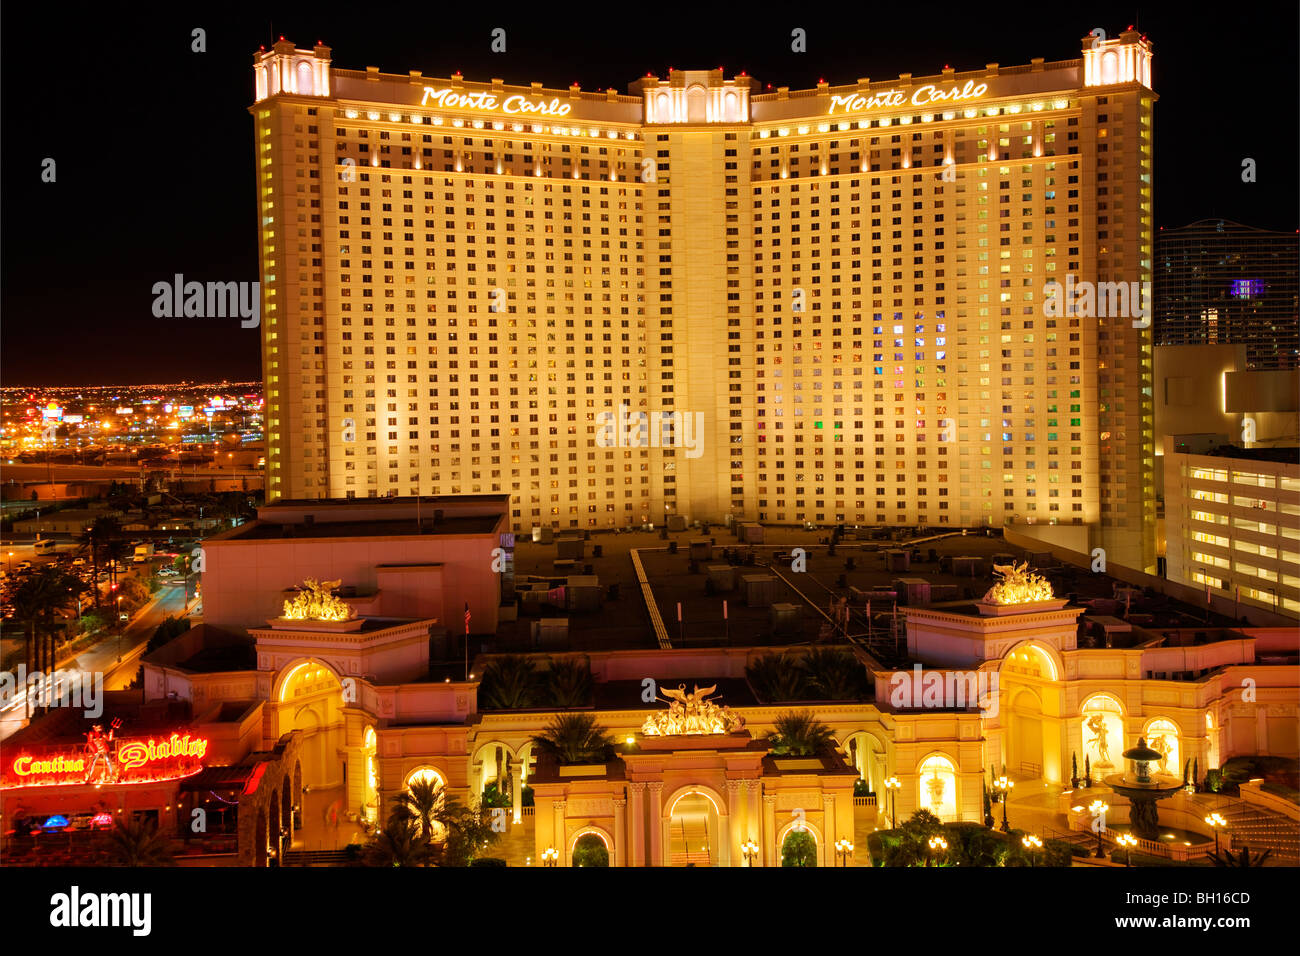 Monte Carlo Hotel and Casino, Las Vegas, Nevada Photo Stock - Alamy